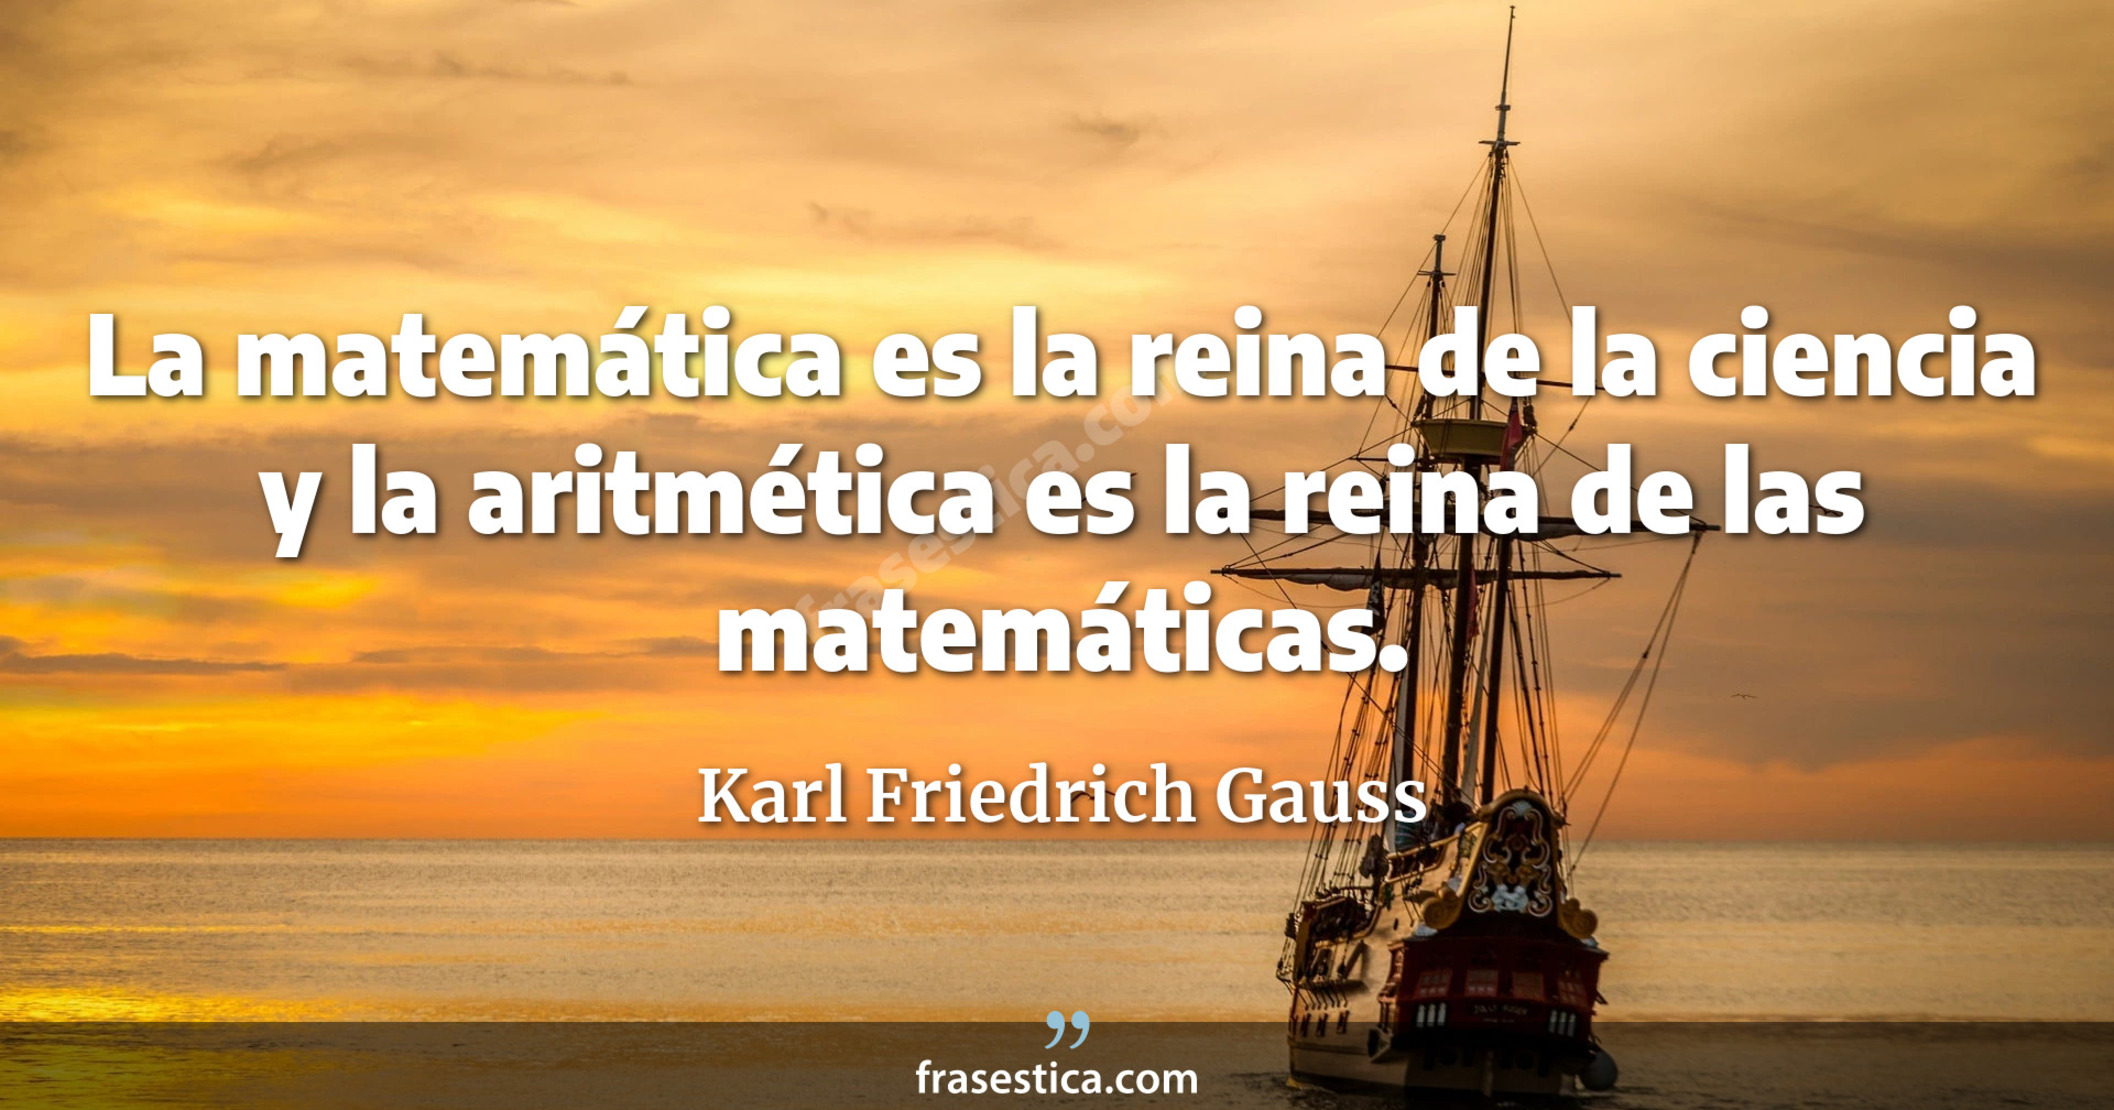 La matemática es la reina de la ciencia y la aritmética es la reina de las matemáticas. - Karl Friedrich Gauss